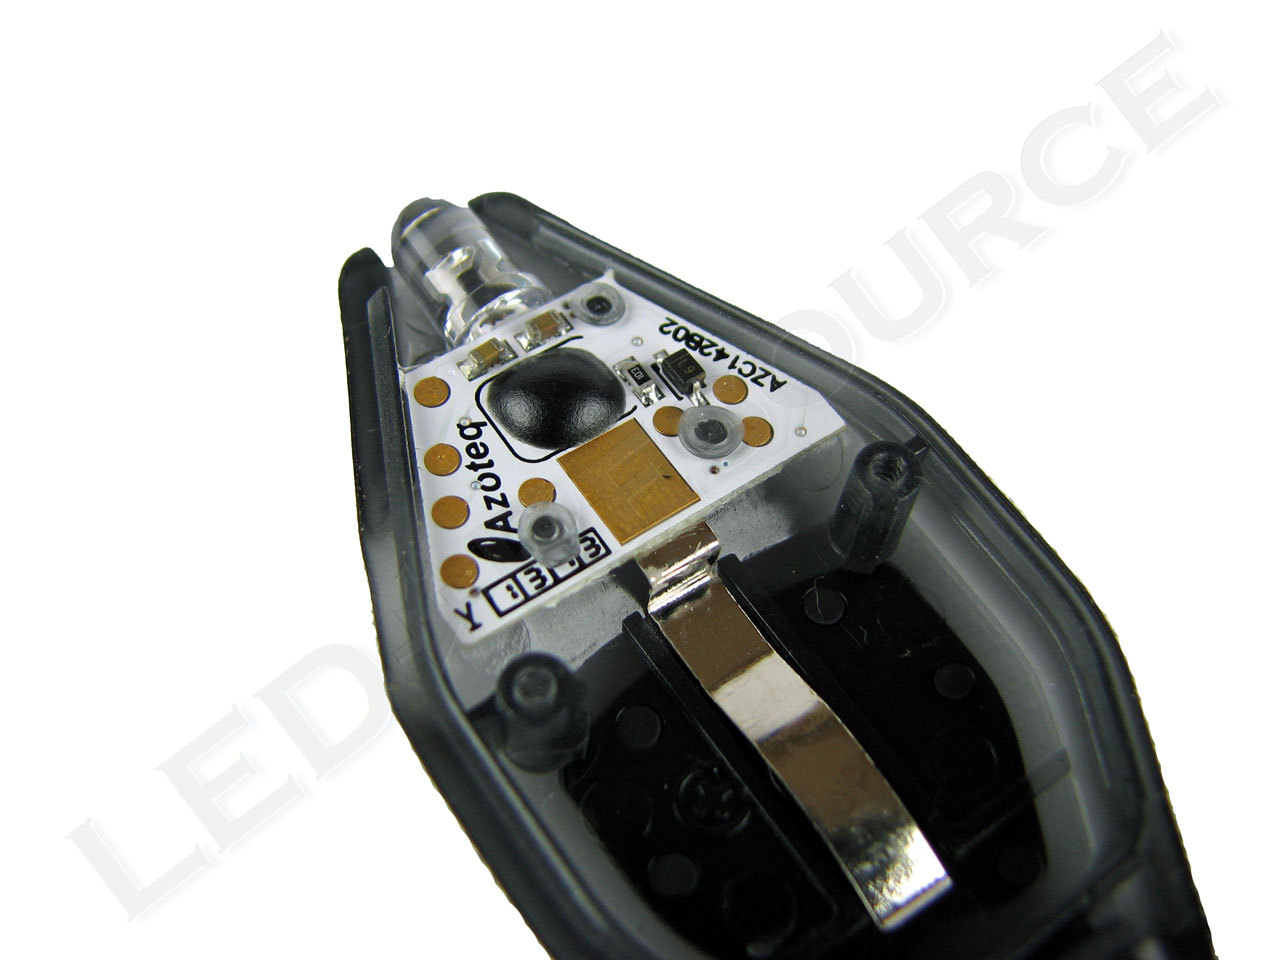 LED Keychain Inova Microlight Swipe-To-Shine Key Chain LED light Smoke Color 